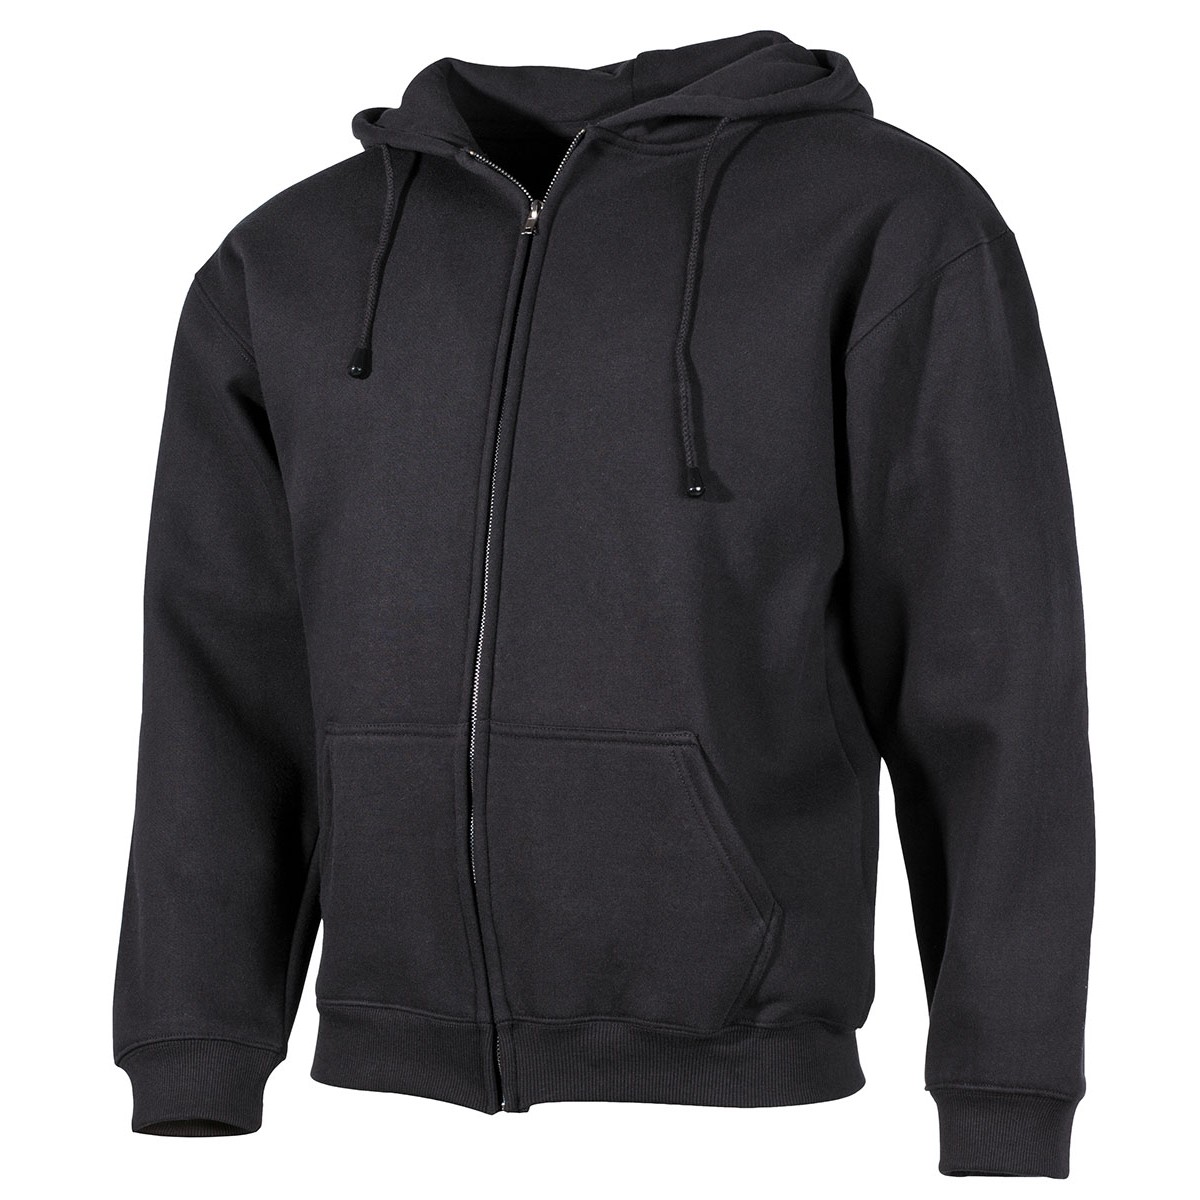 Mikina s kapucí Pro Company Zip - černá, XL